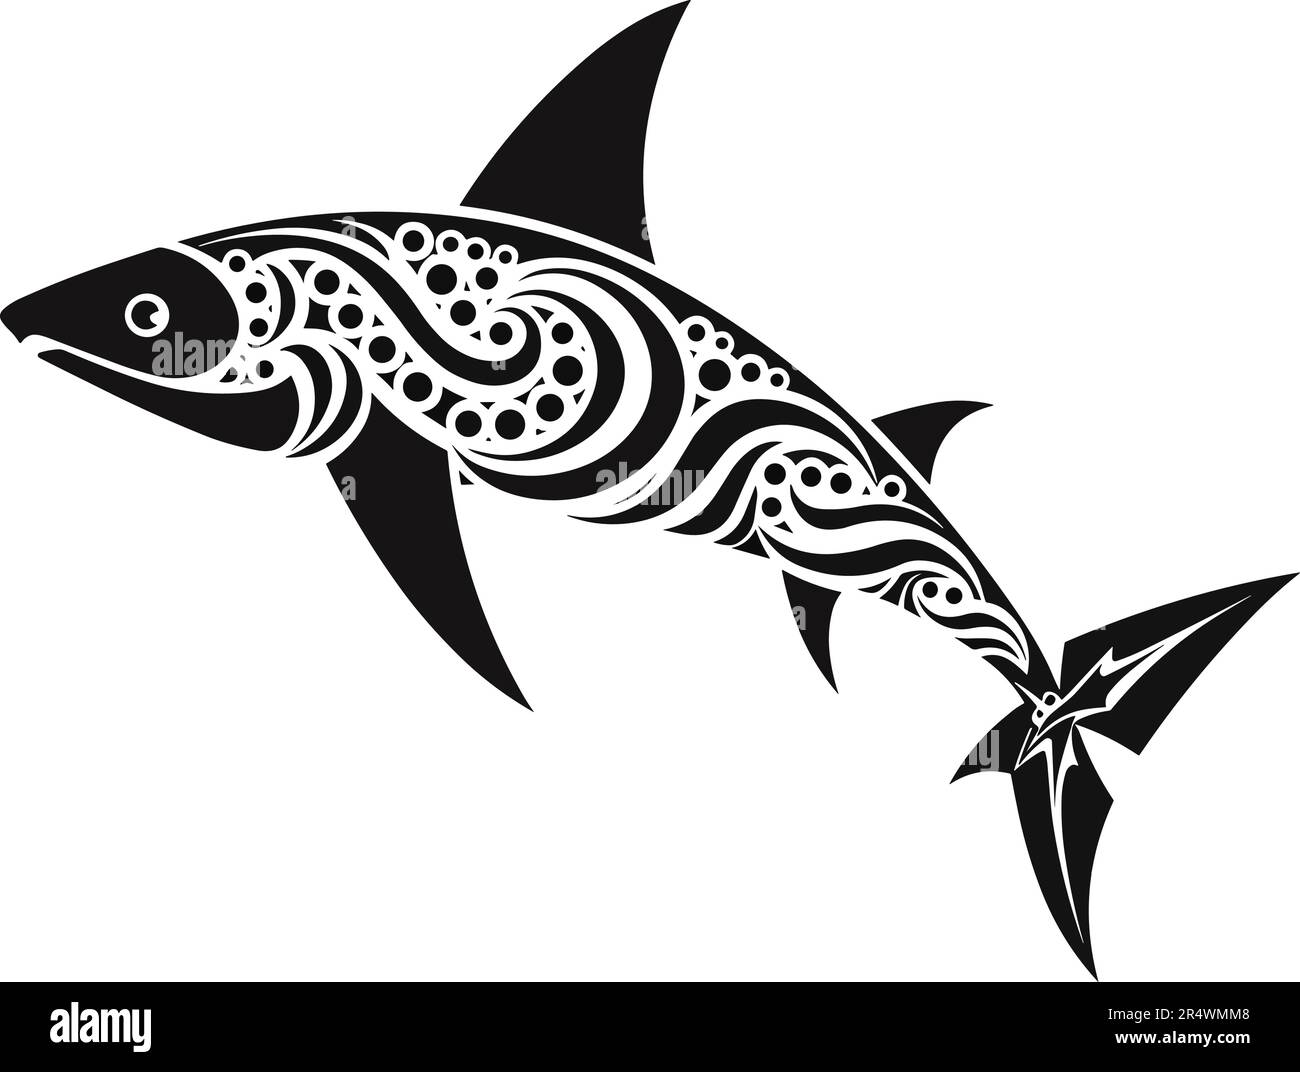 Tatouage de style maori tribal de requin avec éléments ethniques tribaux polynésiens, vecteur noir et blanc isolé sur fond blanc Illustration de Vecteur